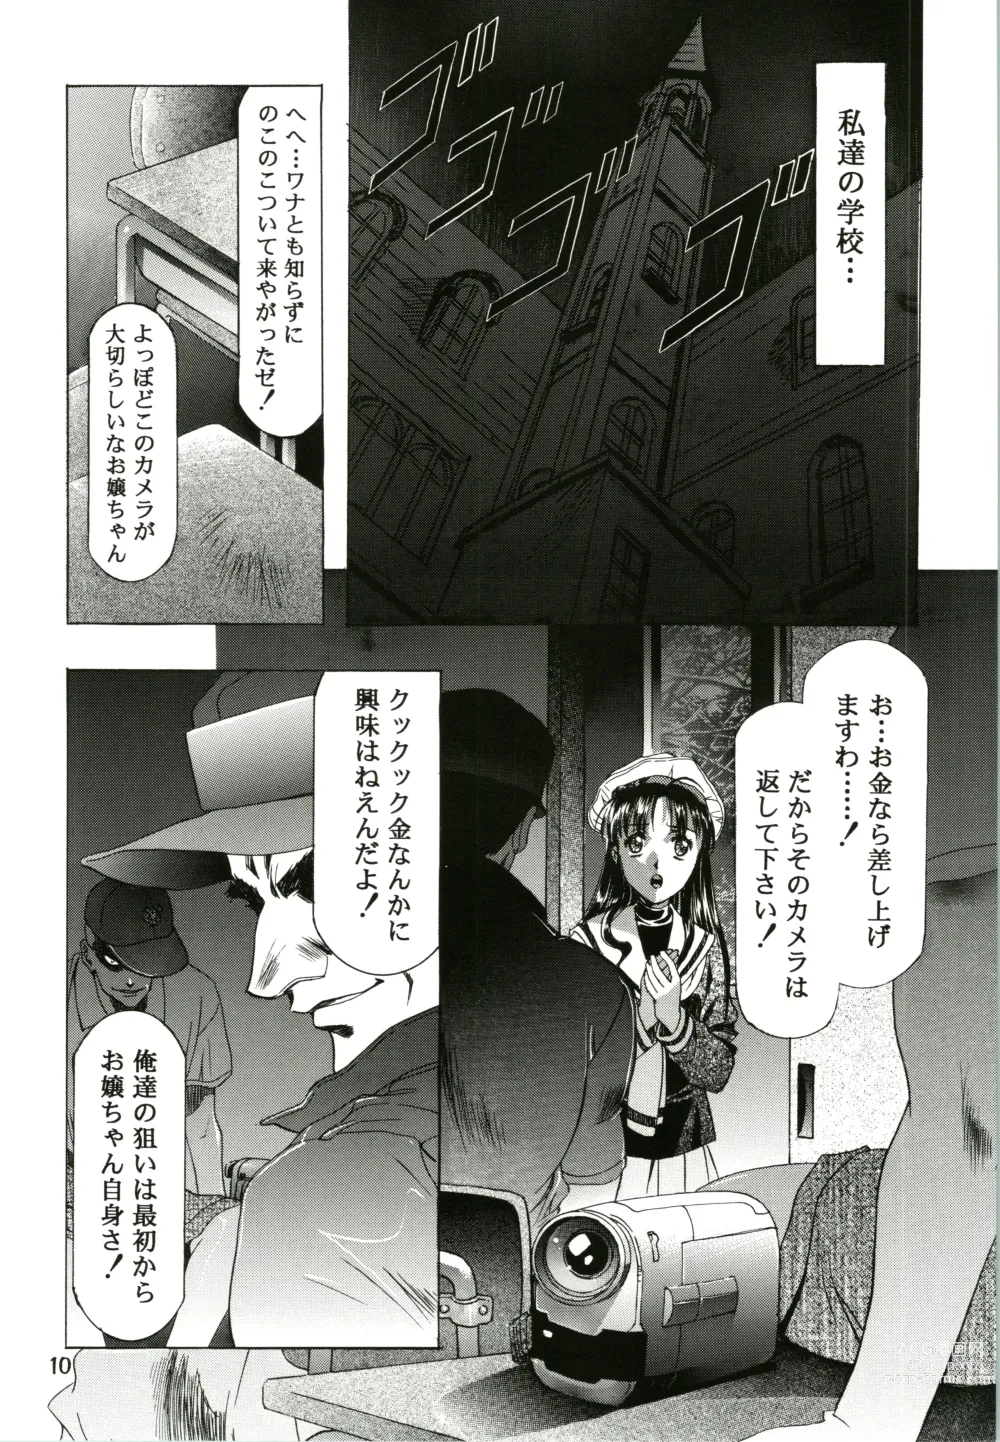 Page 10 of doujinshi Sakura Ame